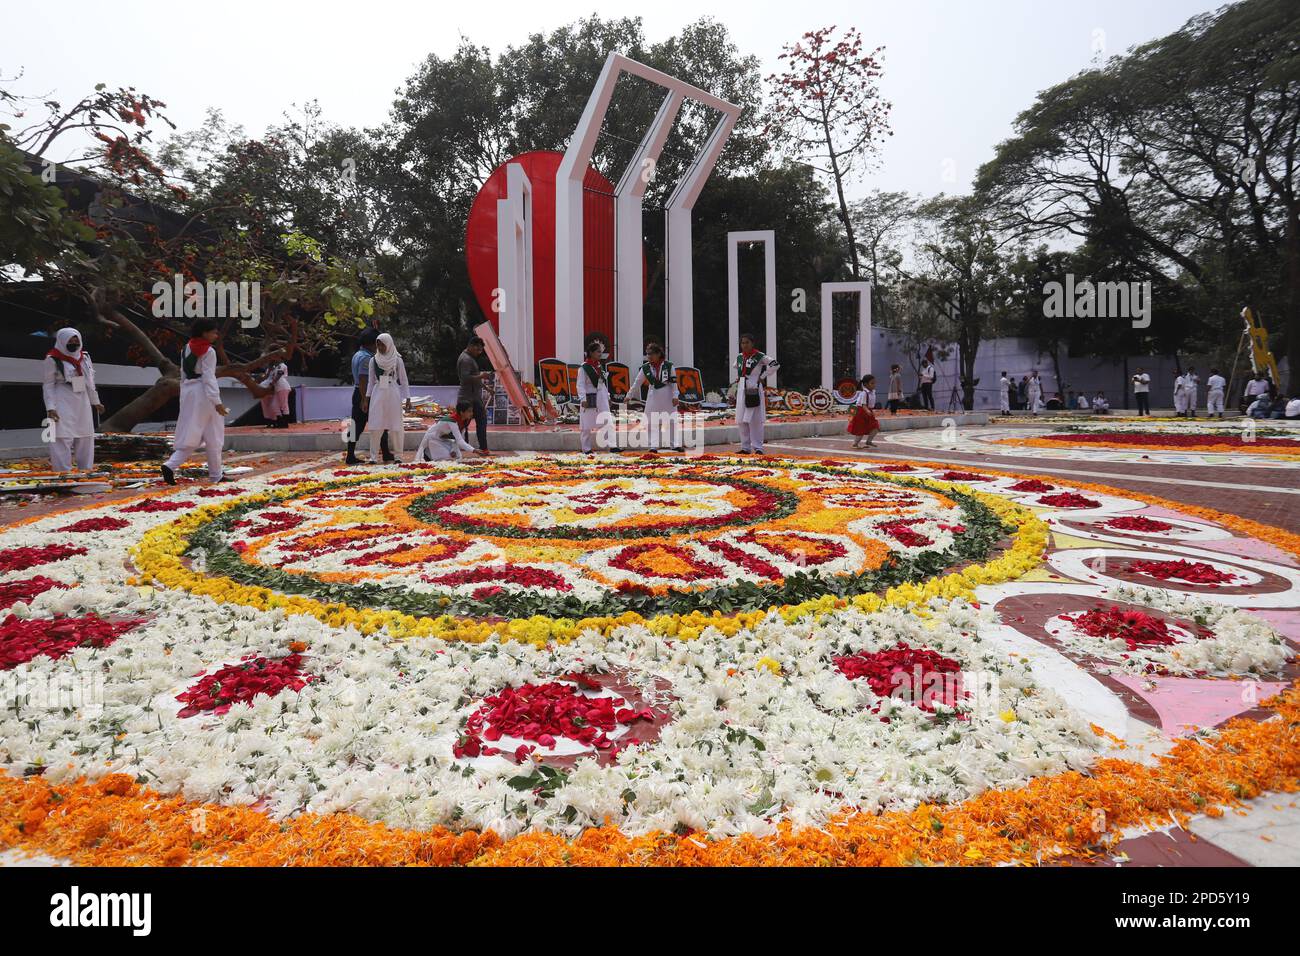 La nation a rendu hommage aux martyrs du mouvement linguistique de 1952 au Minar central de Shaheed à Dhaka, à la première heure de la Journée des martyrs, mardi Banque D'Images